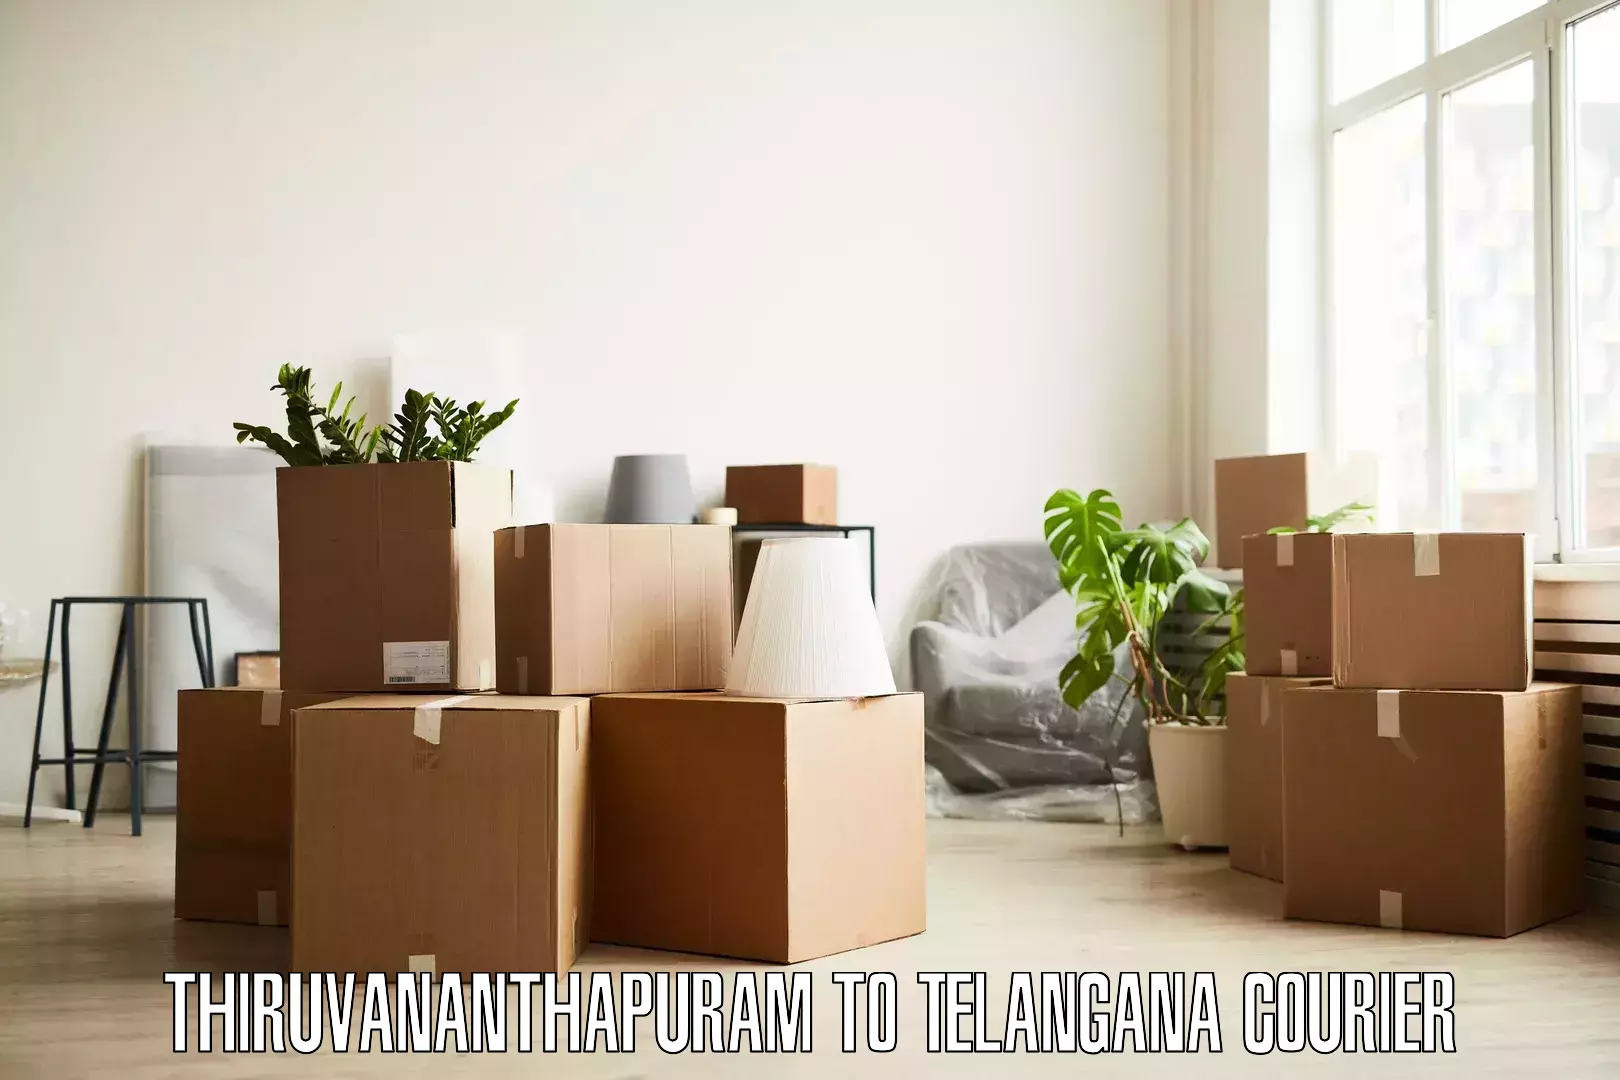 Efficient home relocation Thiruvananthapuram to Hyderabad